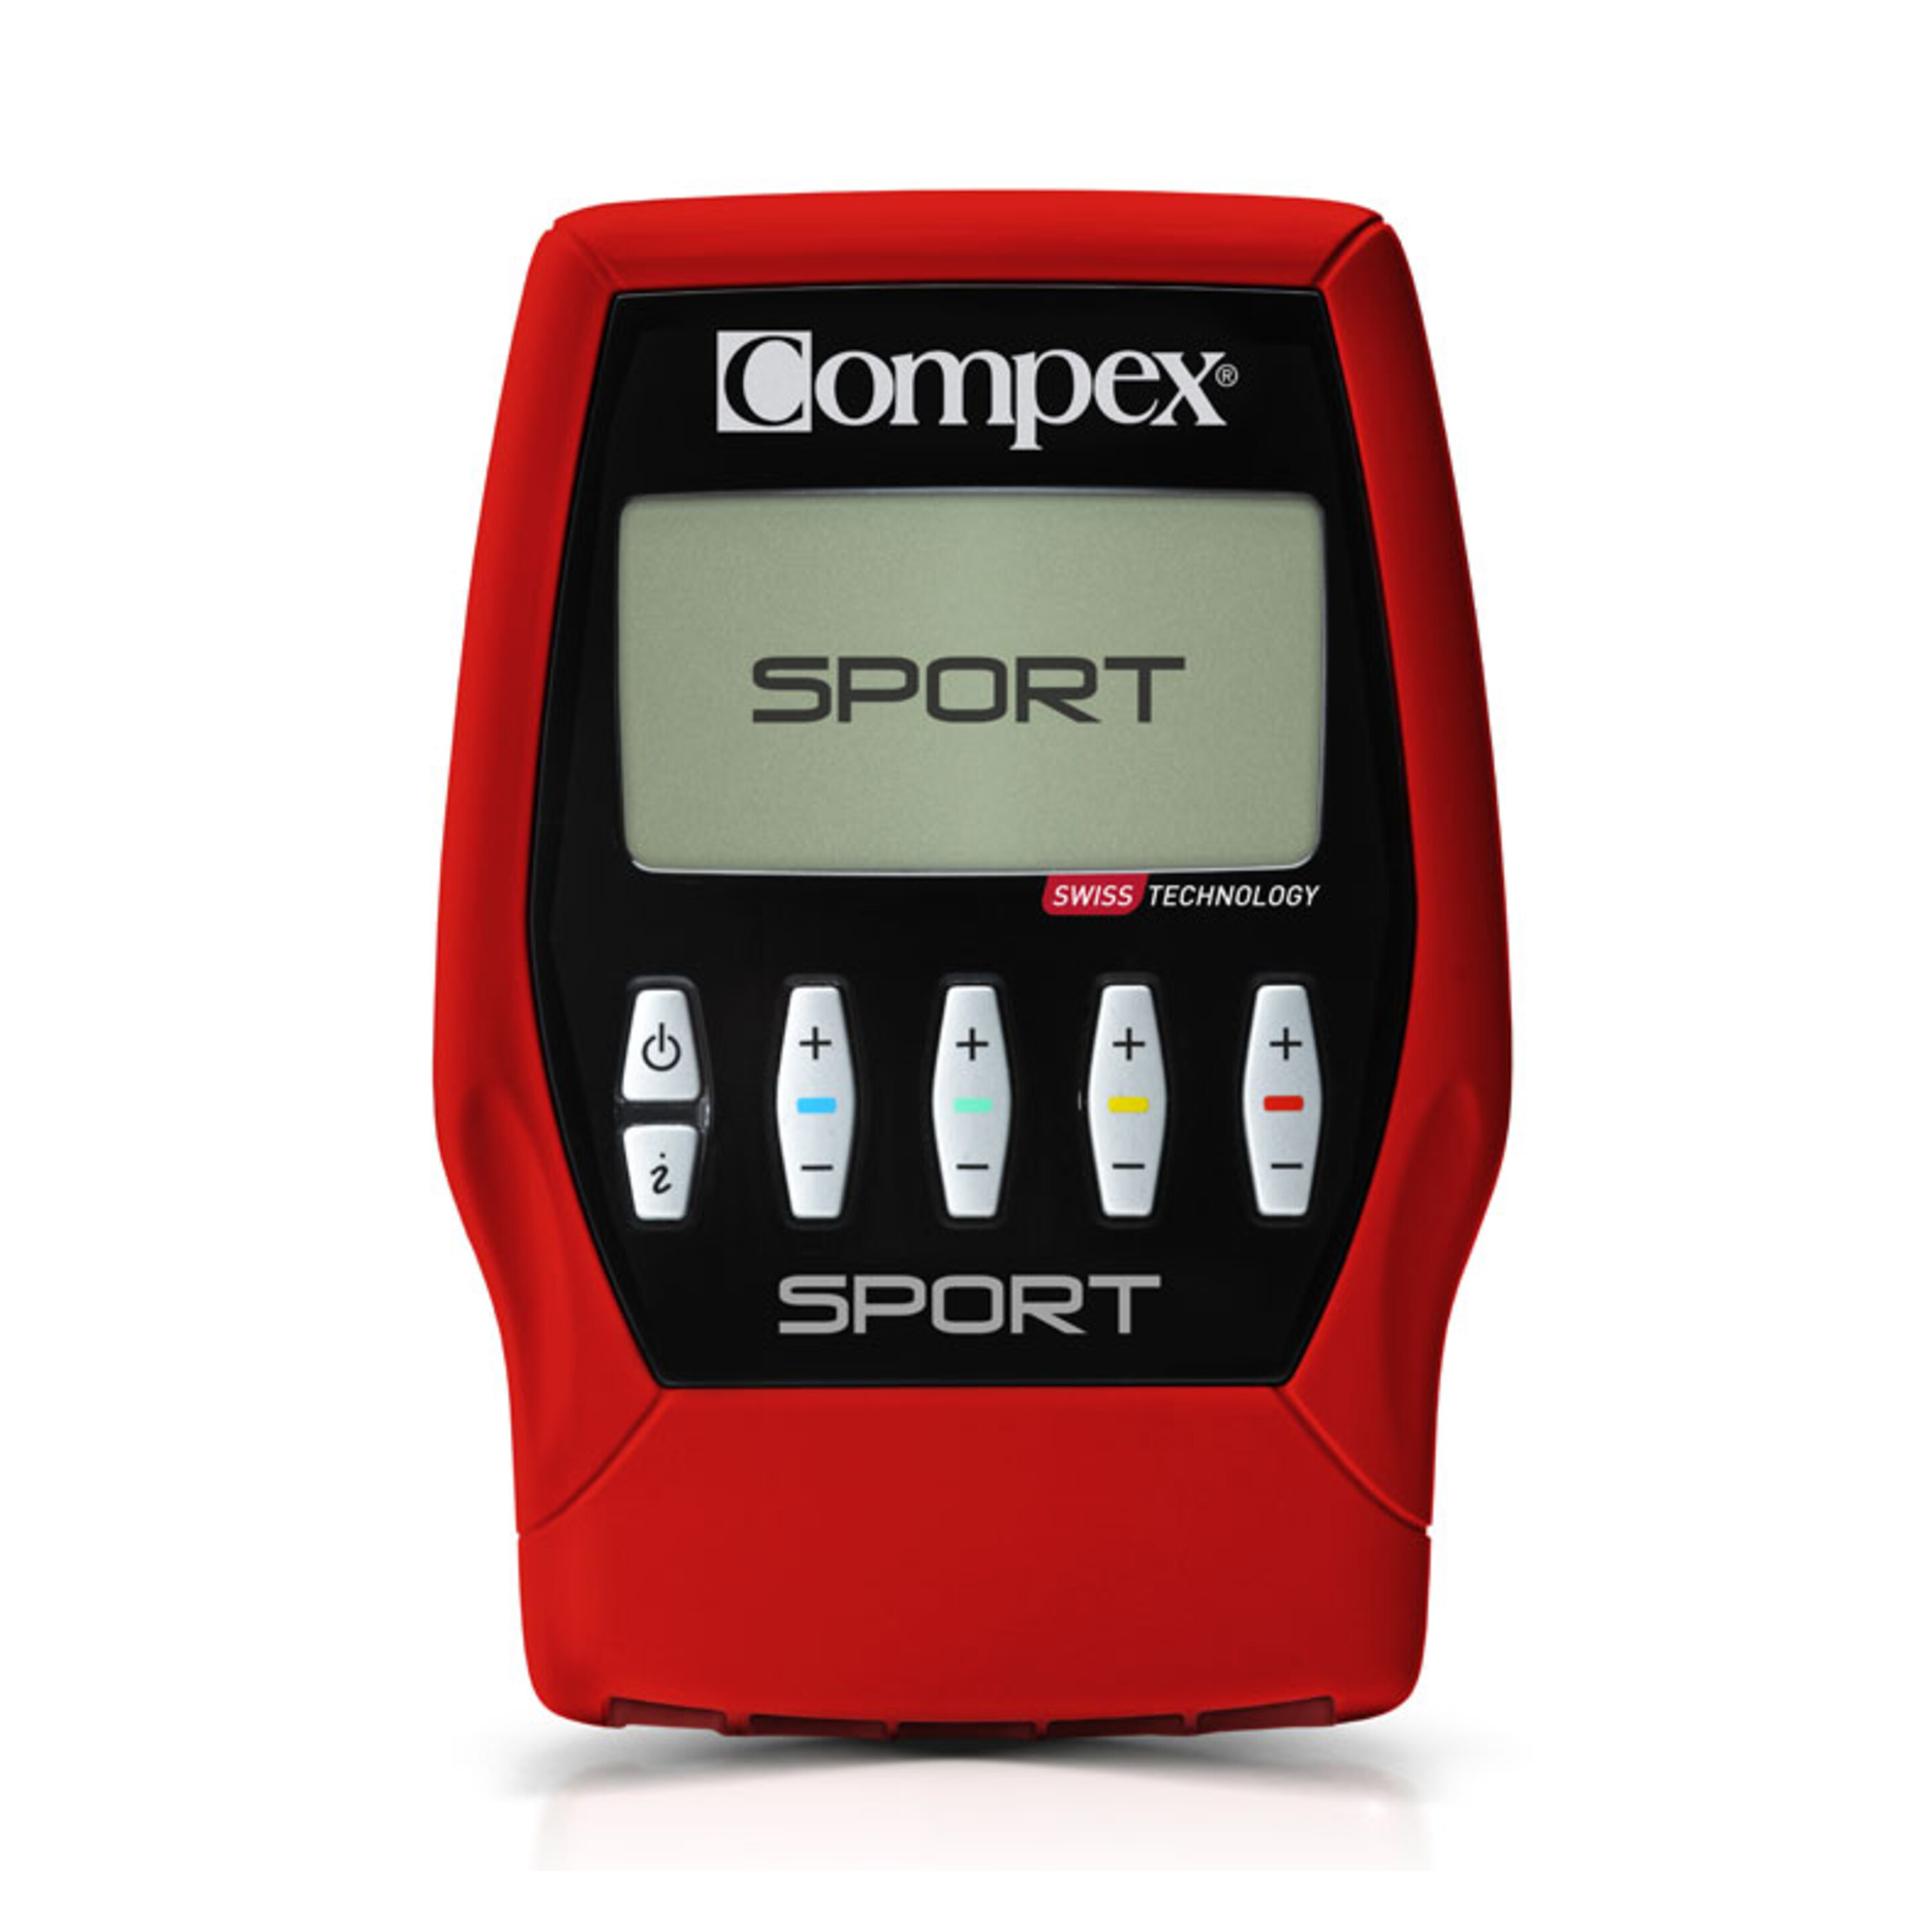 Electroestimulador Compex Sport - Rojo - El Deporte No Es Un Fin Es Un Medio  MKP